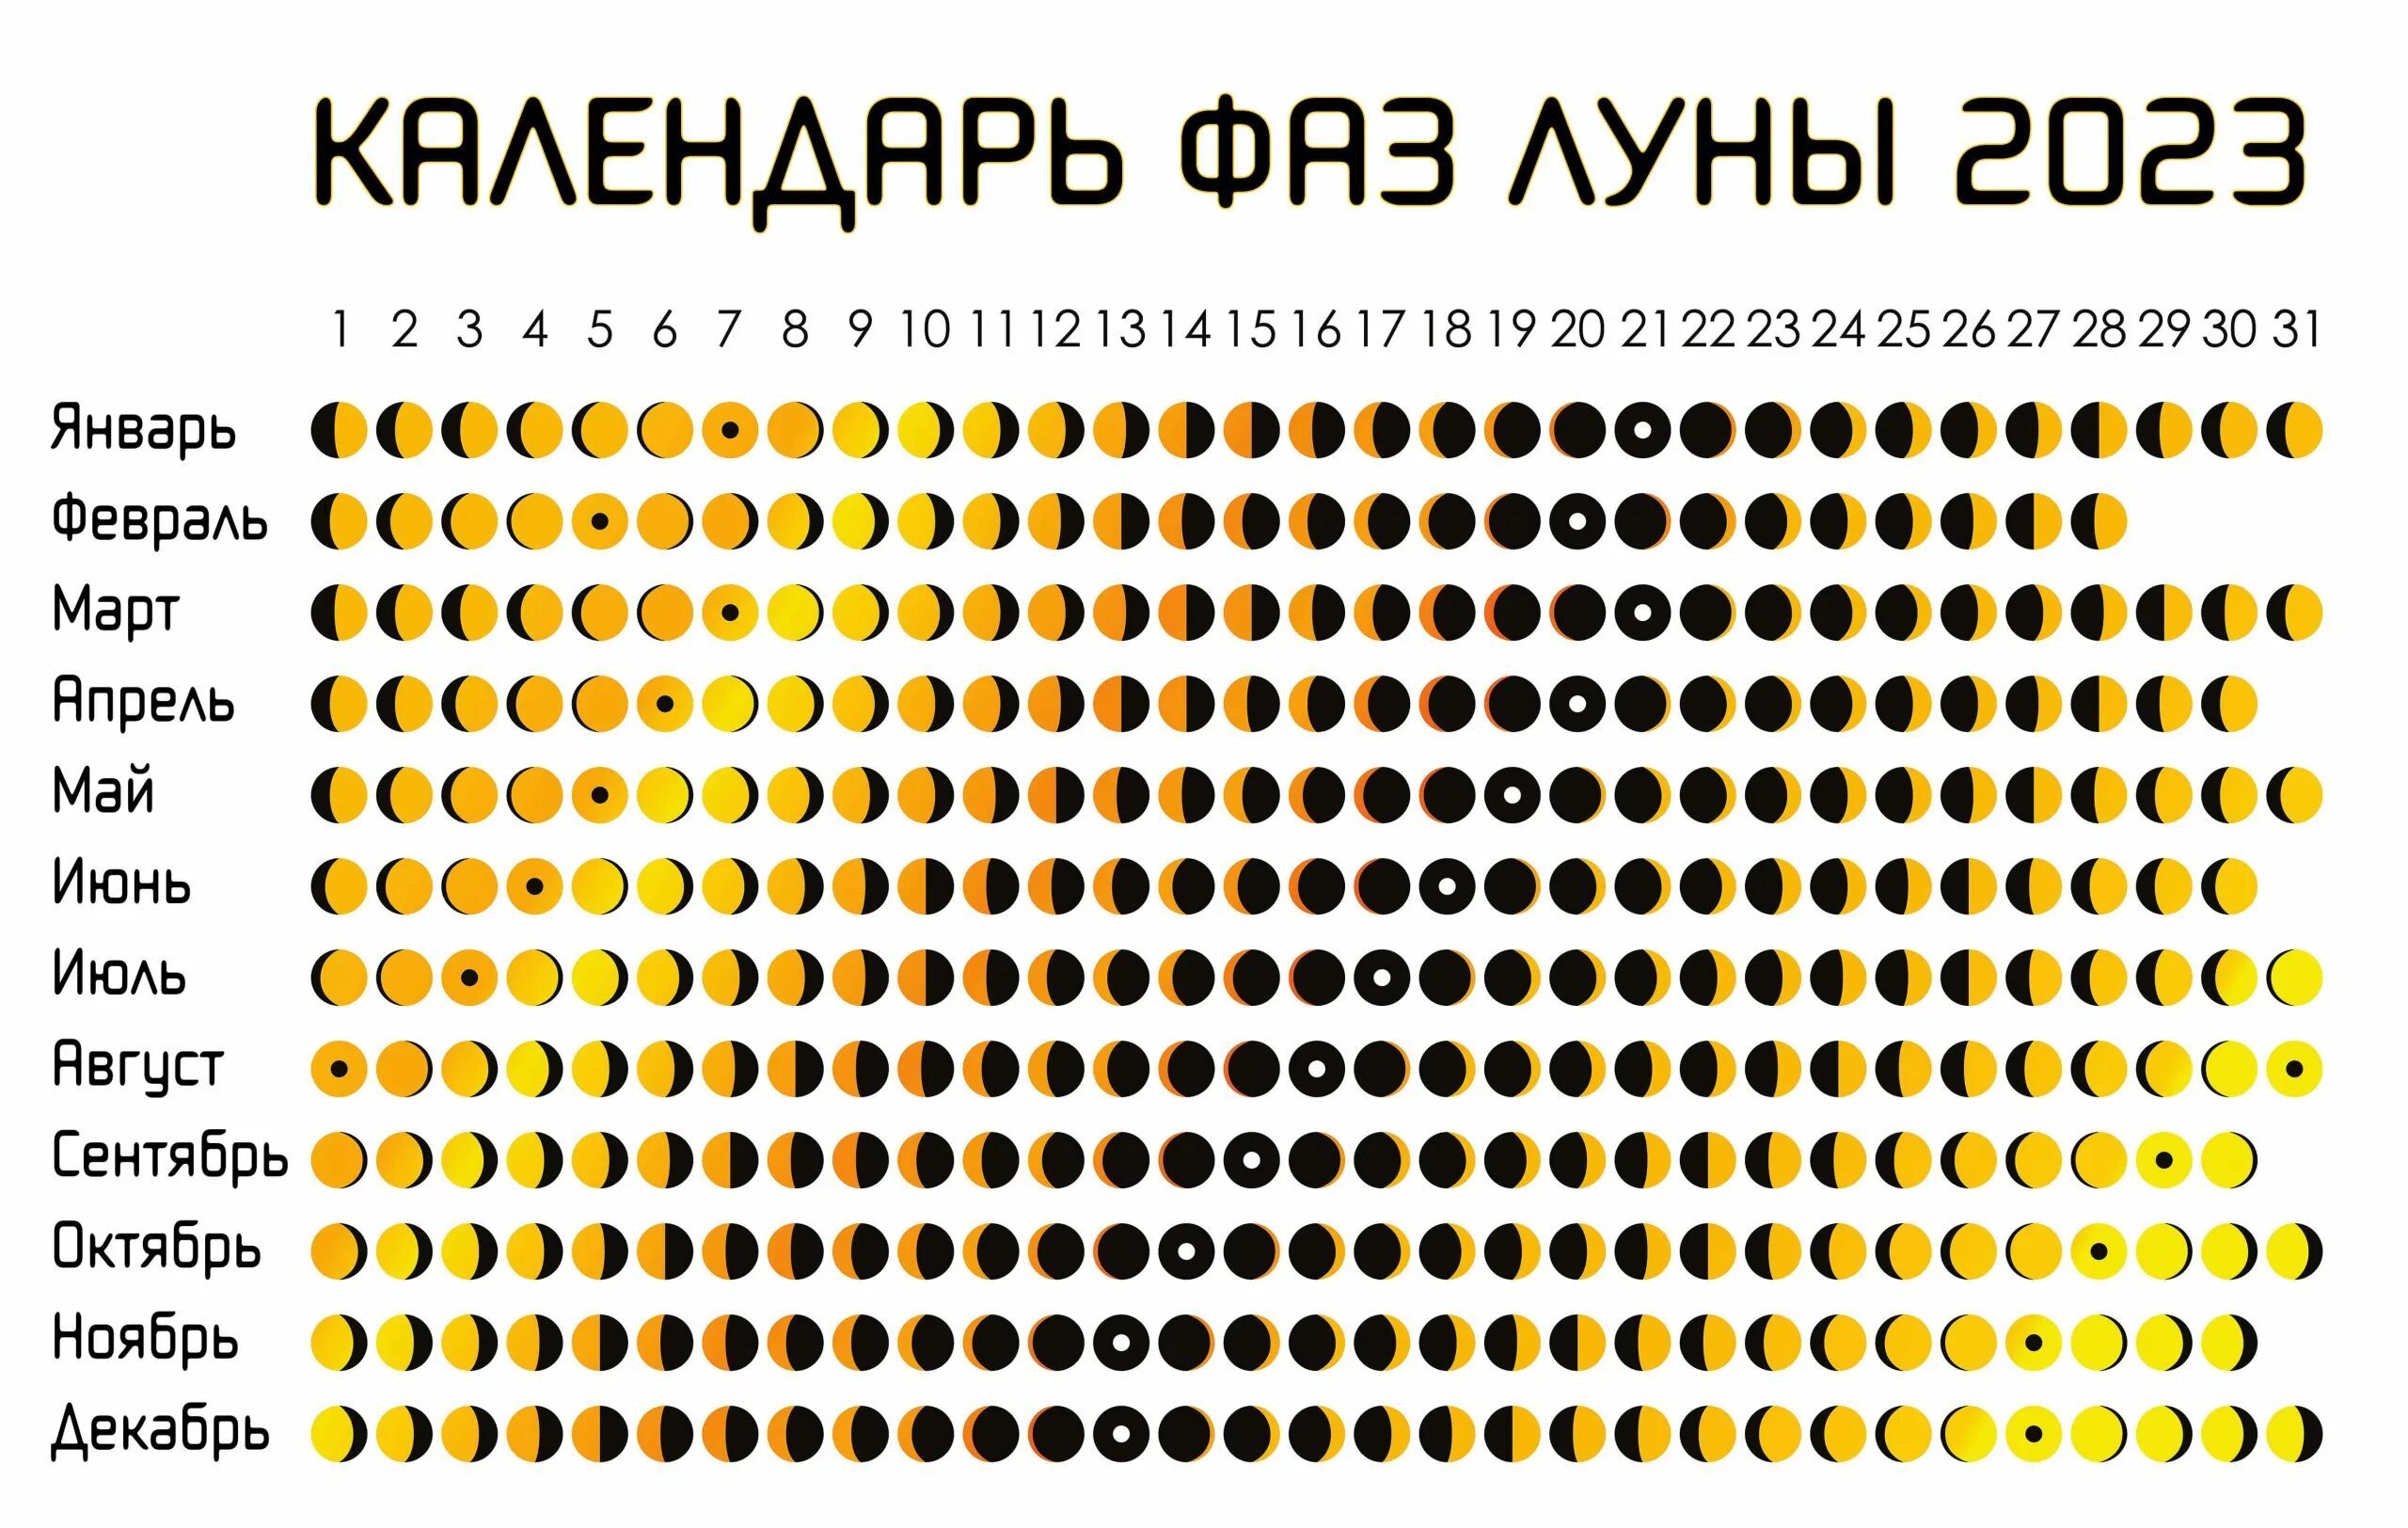 Календарь на 2023 год с фазами Луны. Календарь фаз Луны на 2023. Календарь Луны на 2023 год. Lunar Calendar 1.0. Фаза луны 23 год